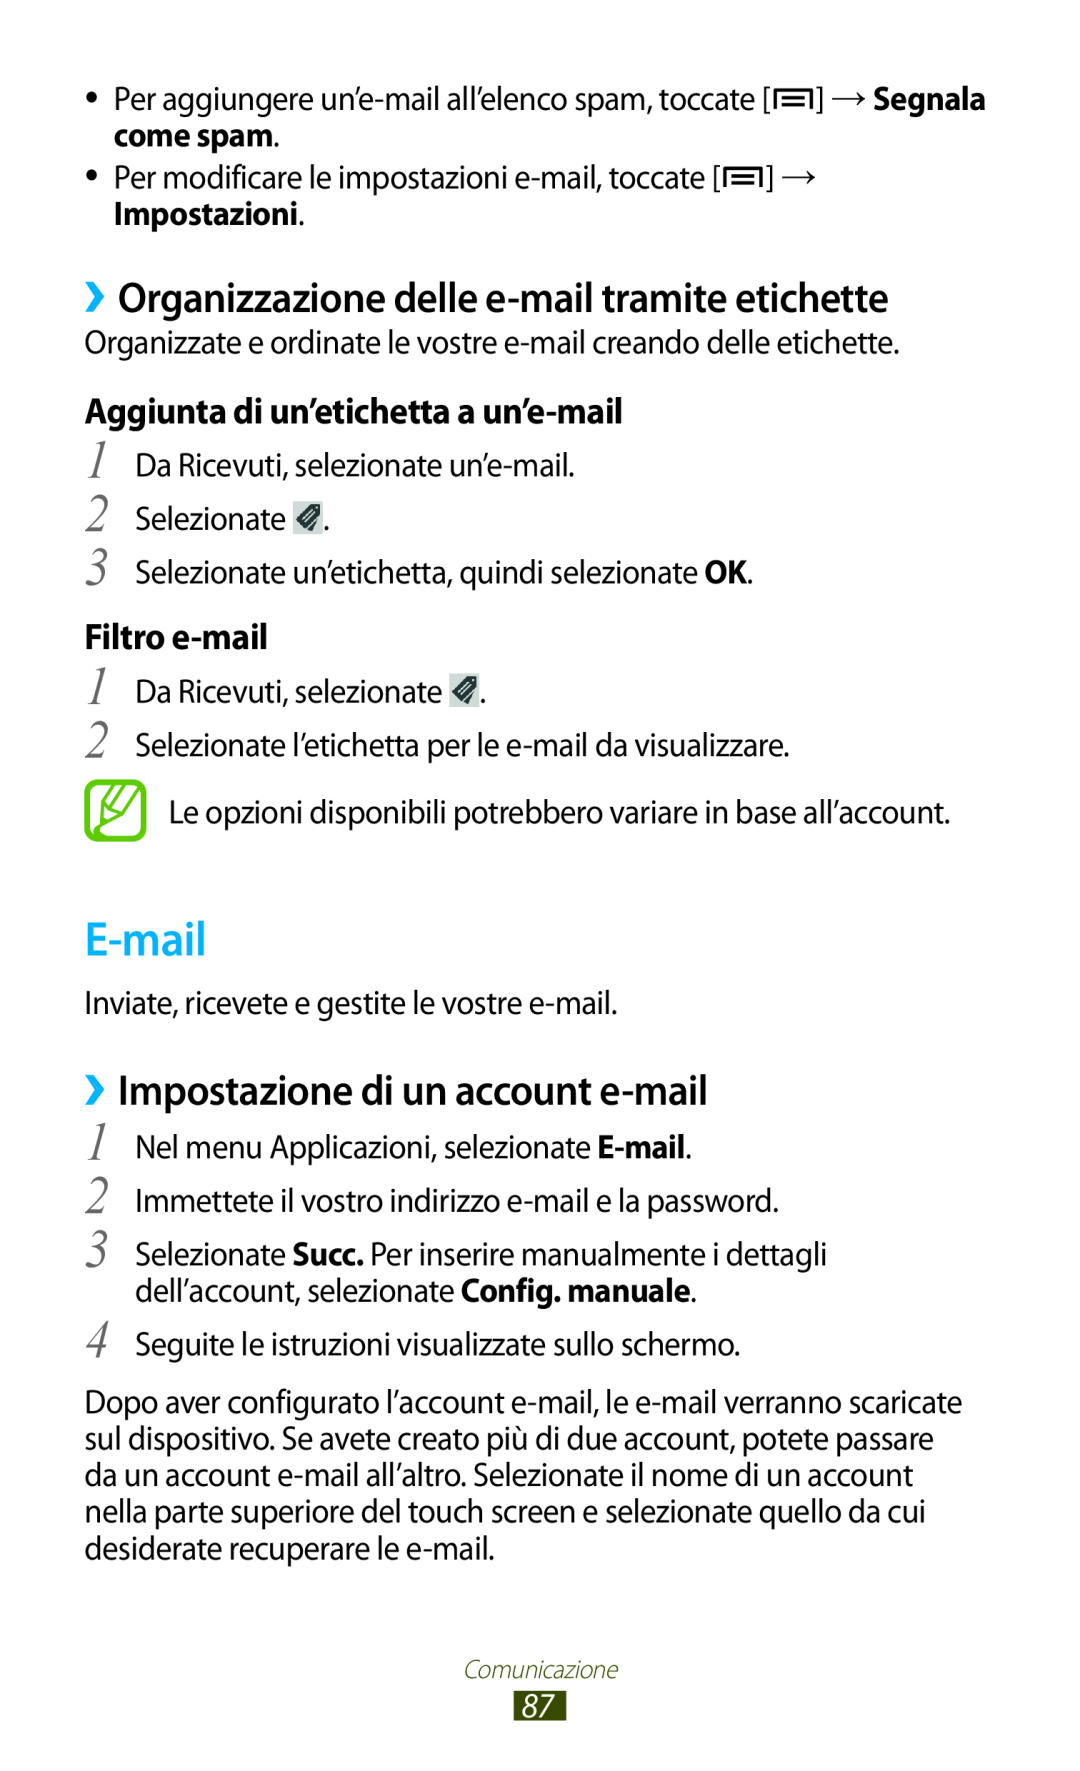 Samsung GT-N7000ZBAOMN manual E-mail, ››Organizzazione delle e-mail tramite etichette, ››Impostazione di un account e-mail 